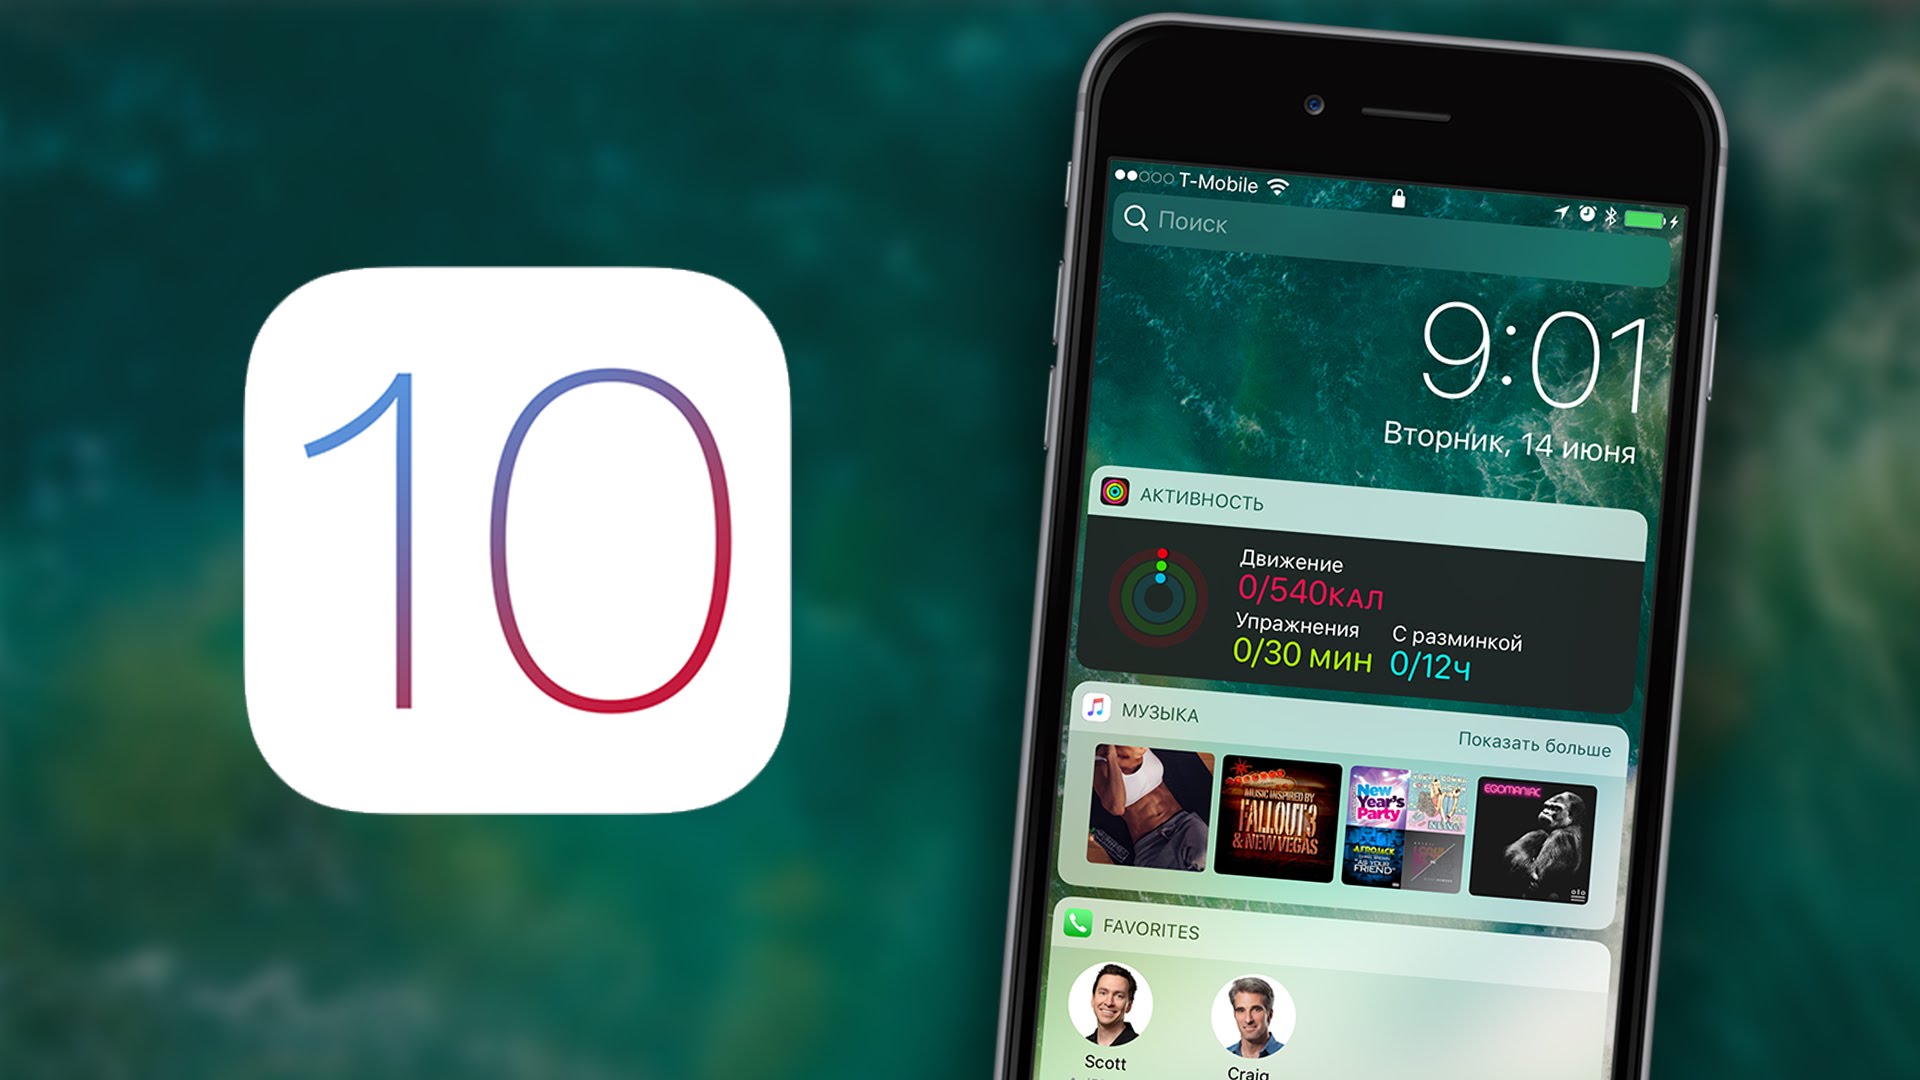 Tổng hợp những điểm mới bạn cần biết trên iOS 10